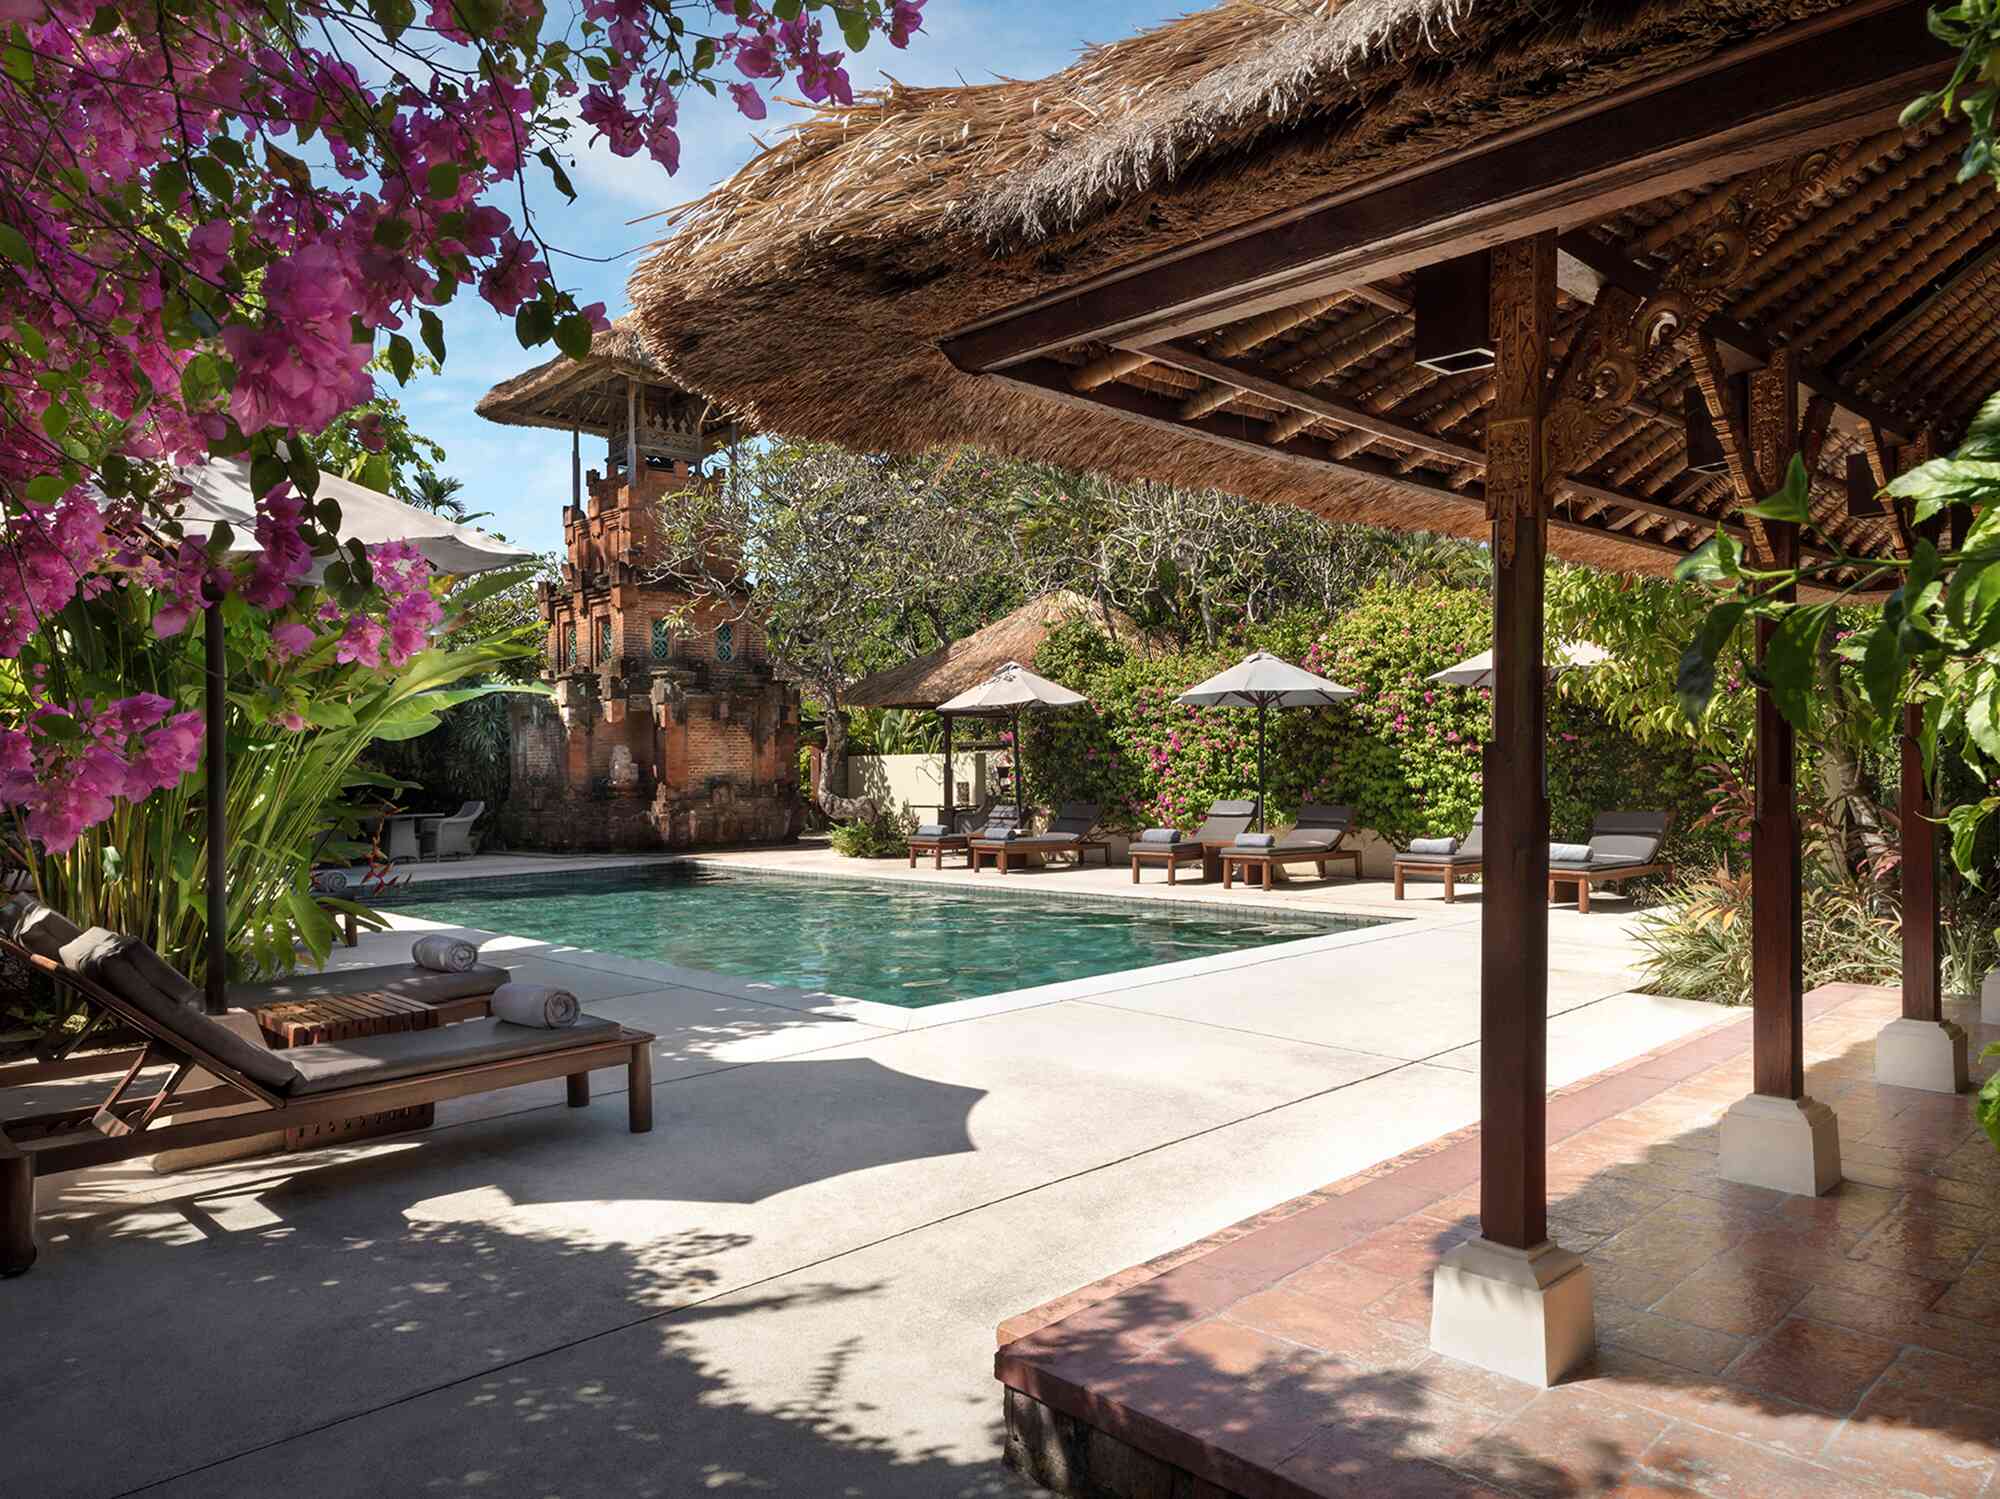 Pavilions-Bali-Main-Pool-002-117004-edit